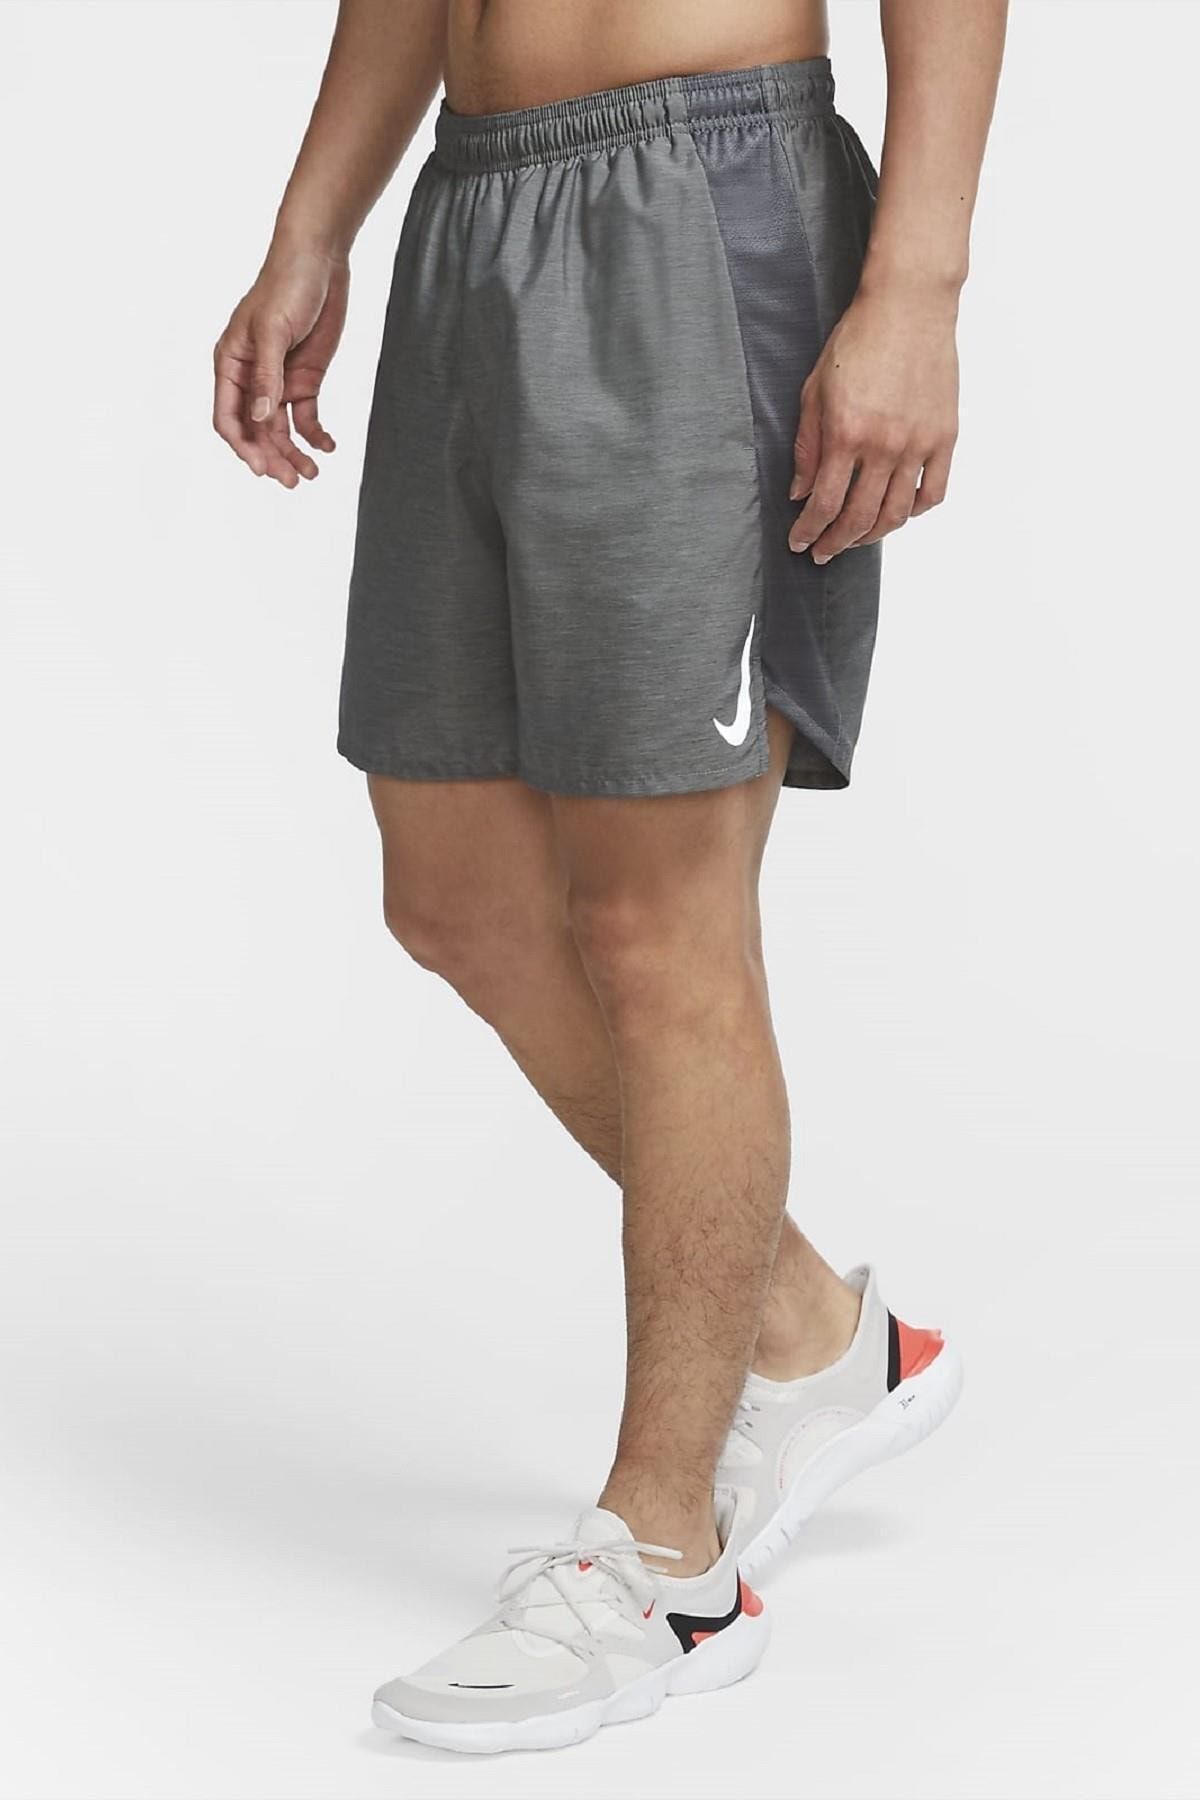 Nike Challenger Running Short Slip Astarlı Gri Erkek Koşu Şortu